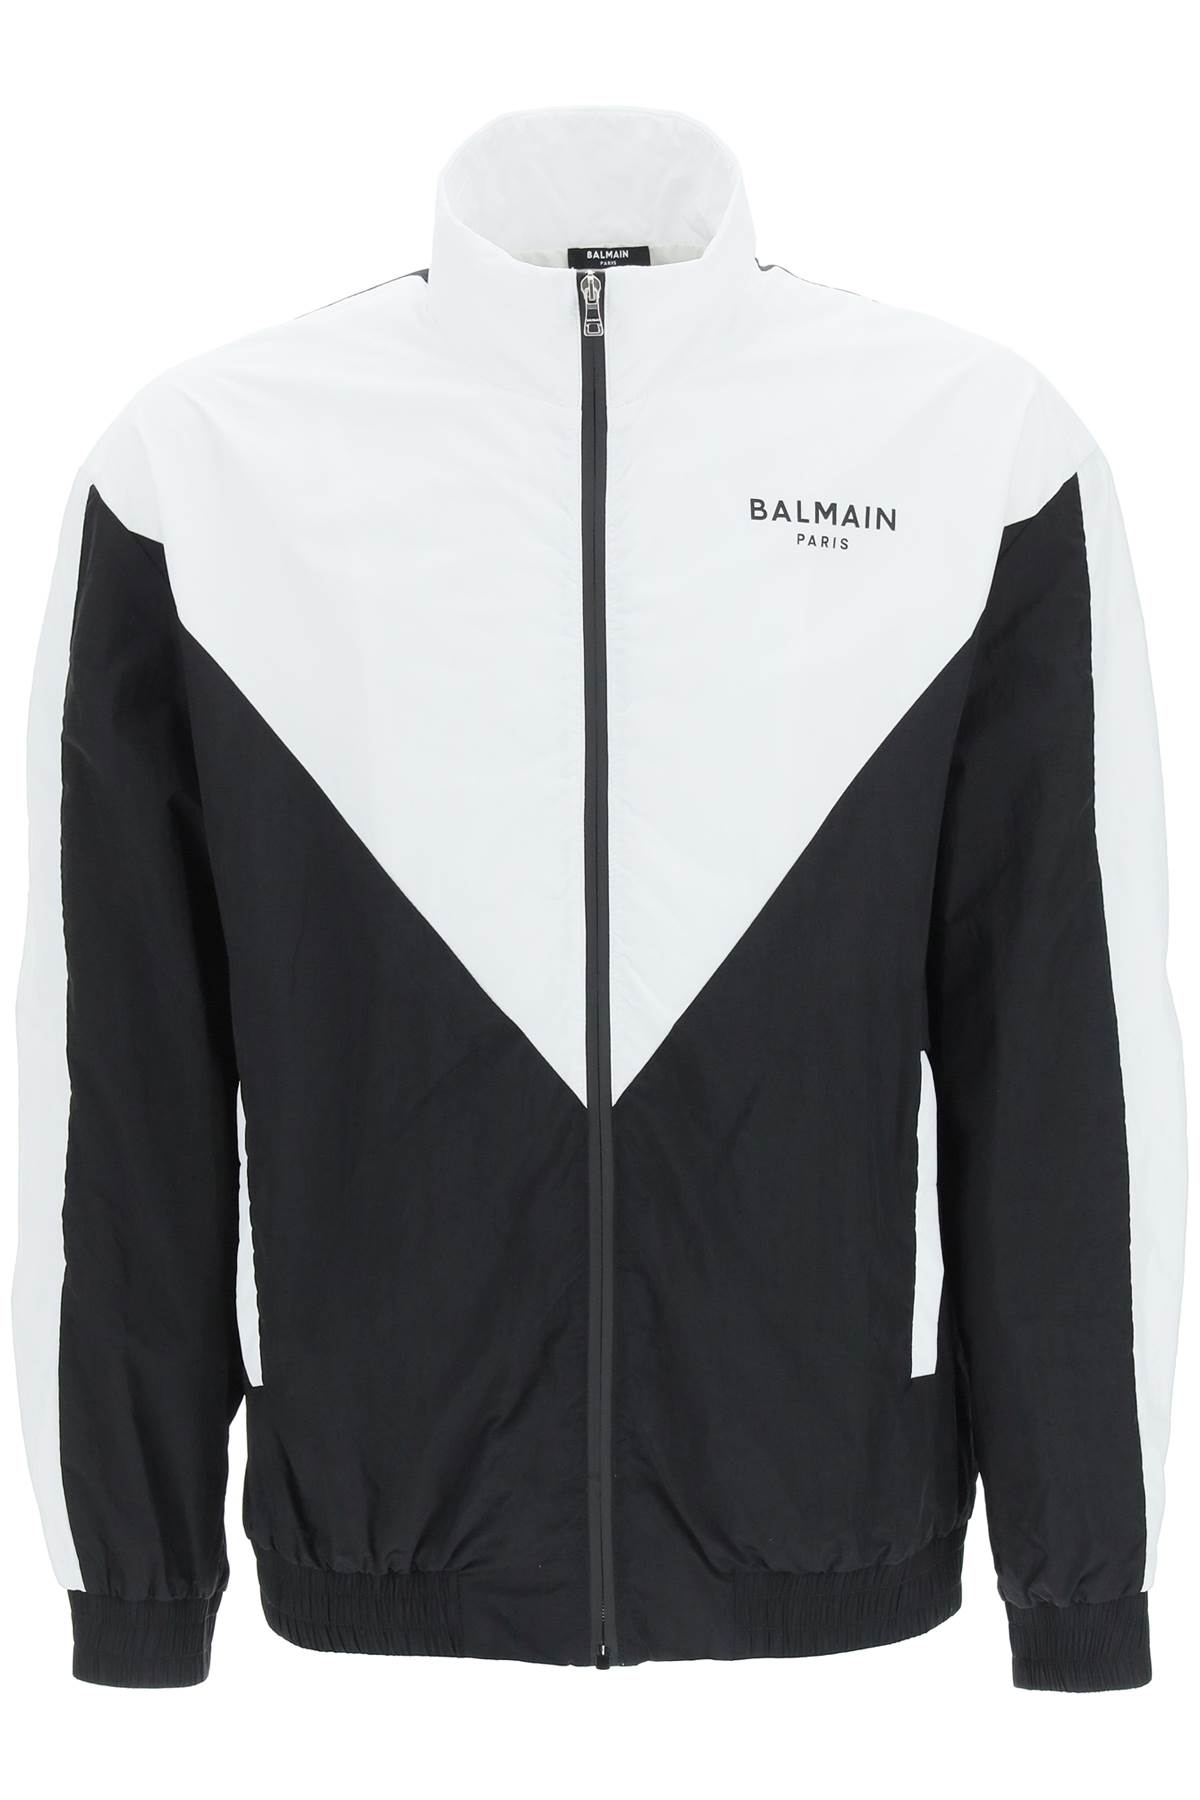 Balmain Two-tone Nylon Jacket With Logo